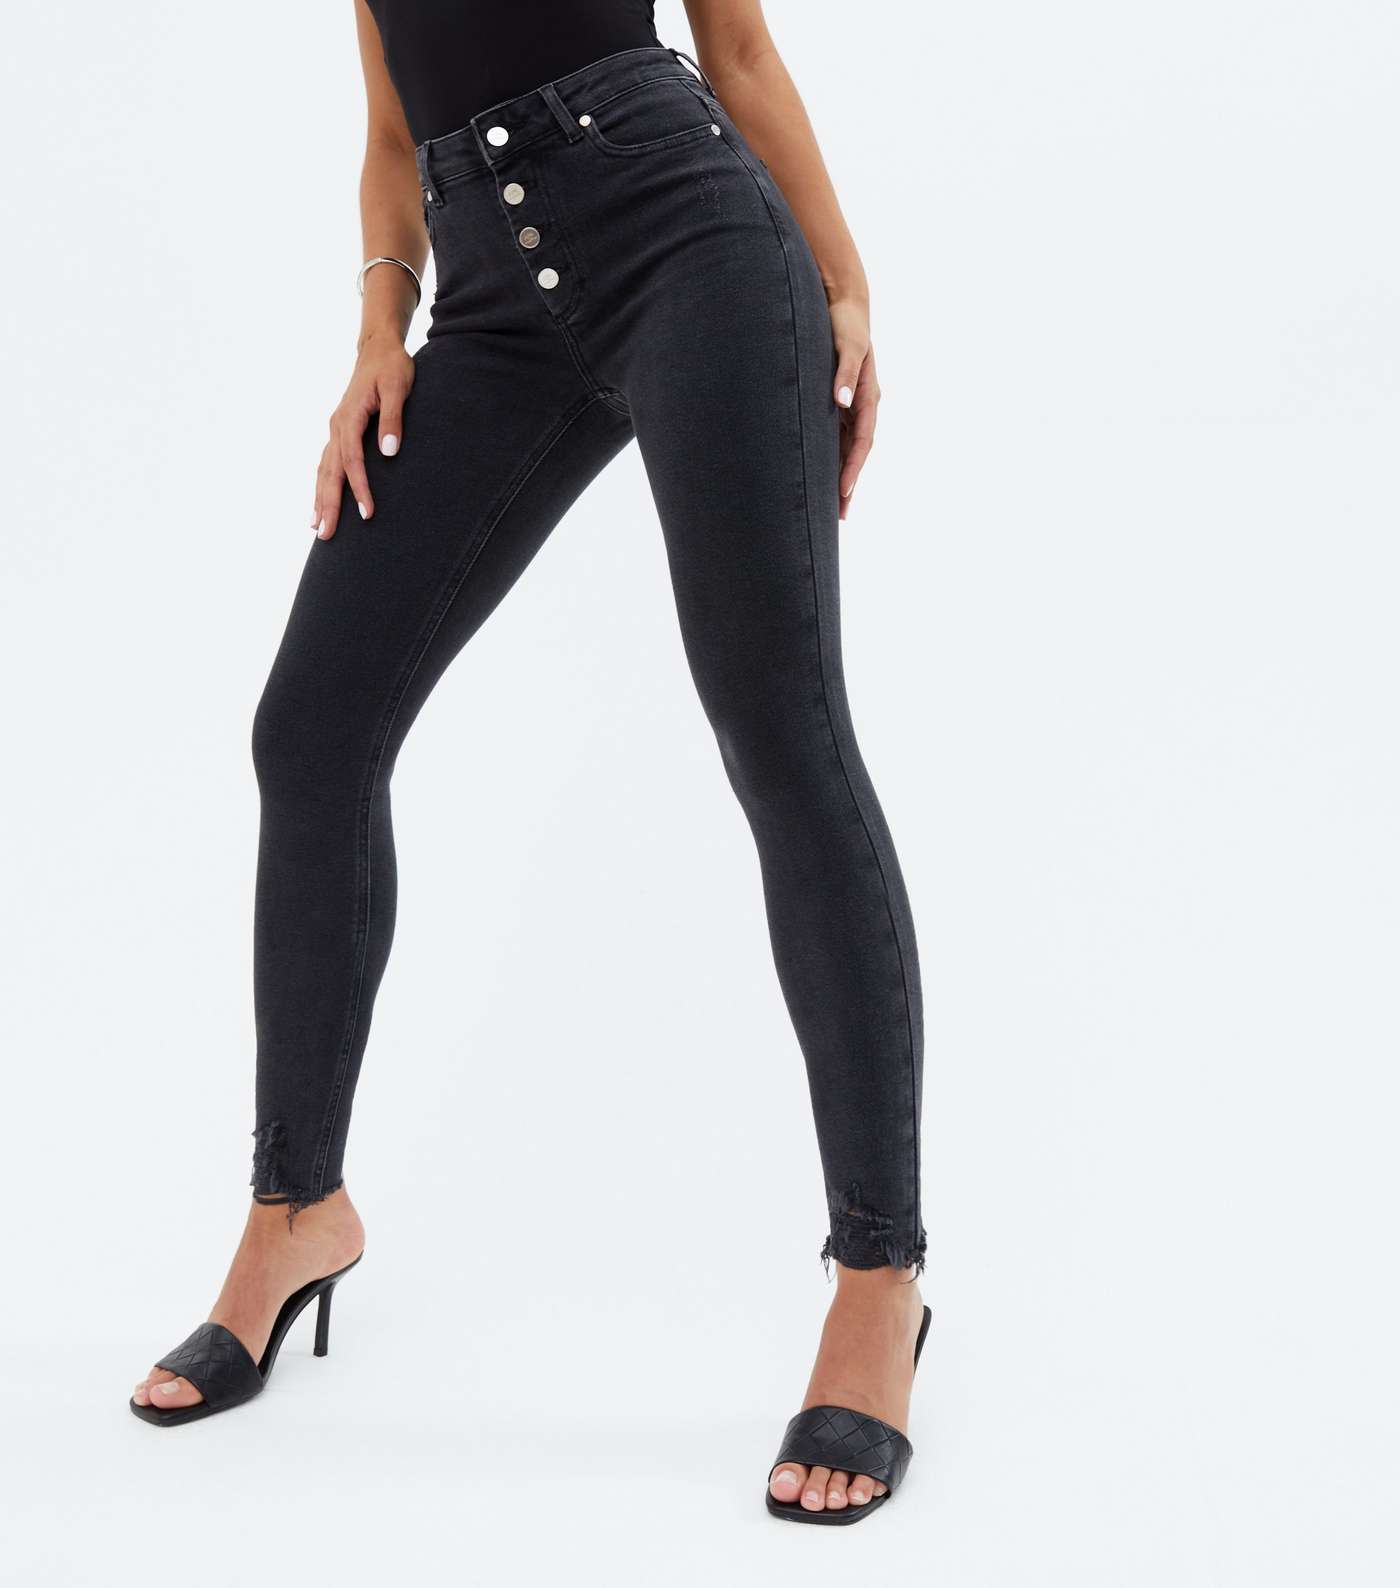 Little Mistress Black Frayed Hem Button Skinny Jeans Image 2